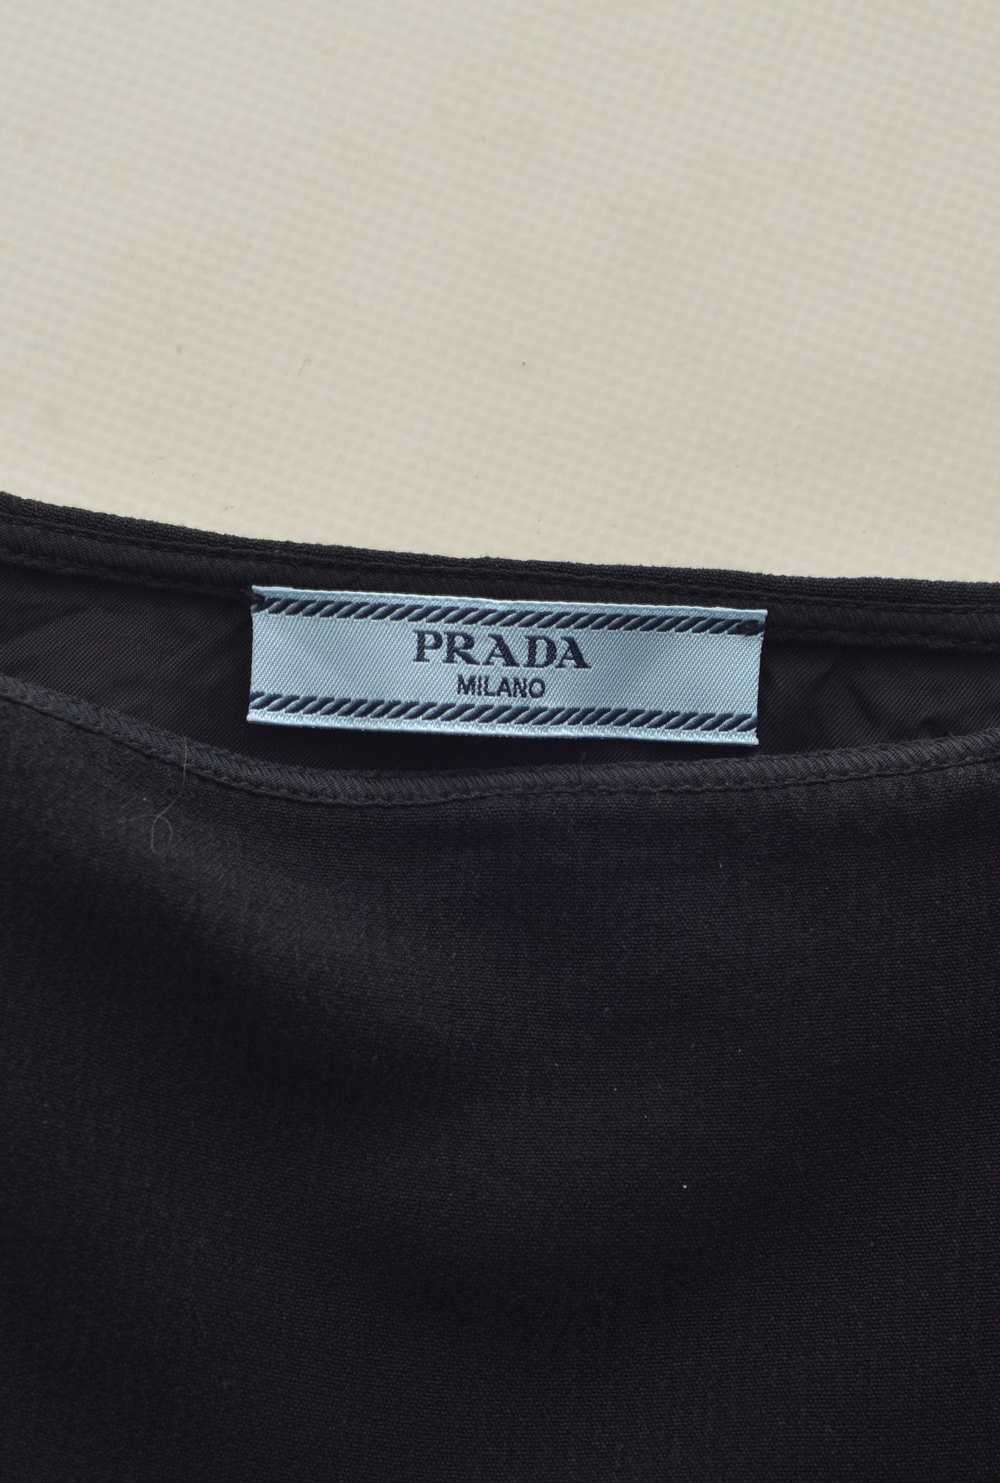 Italian Designers × Luxury × Prada PRADA Milano L… - image 11